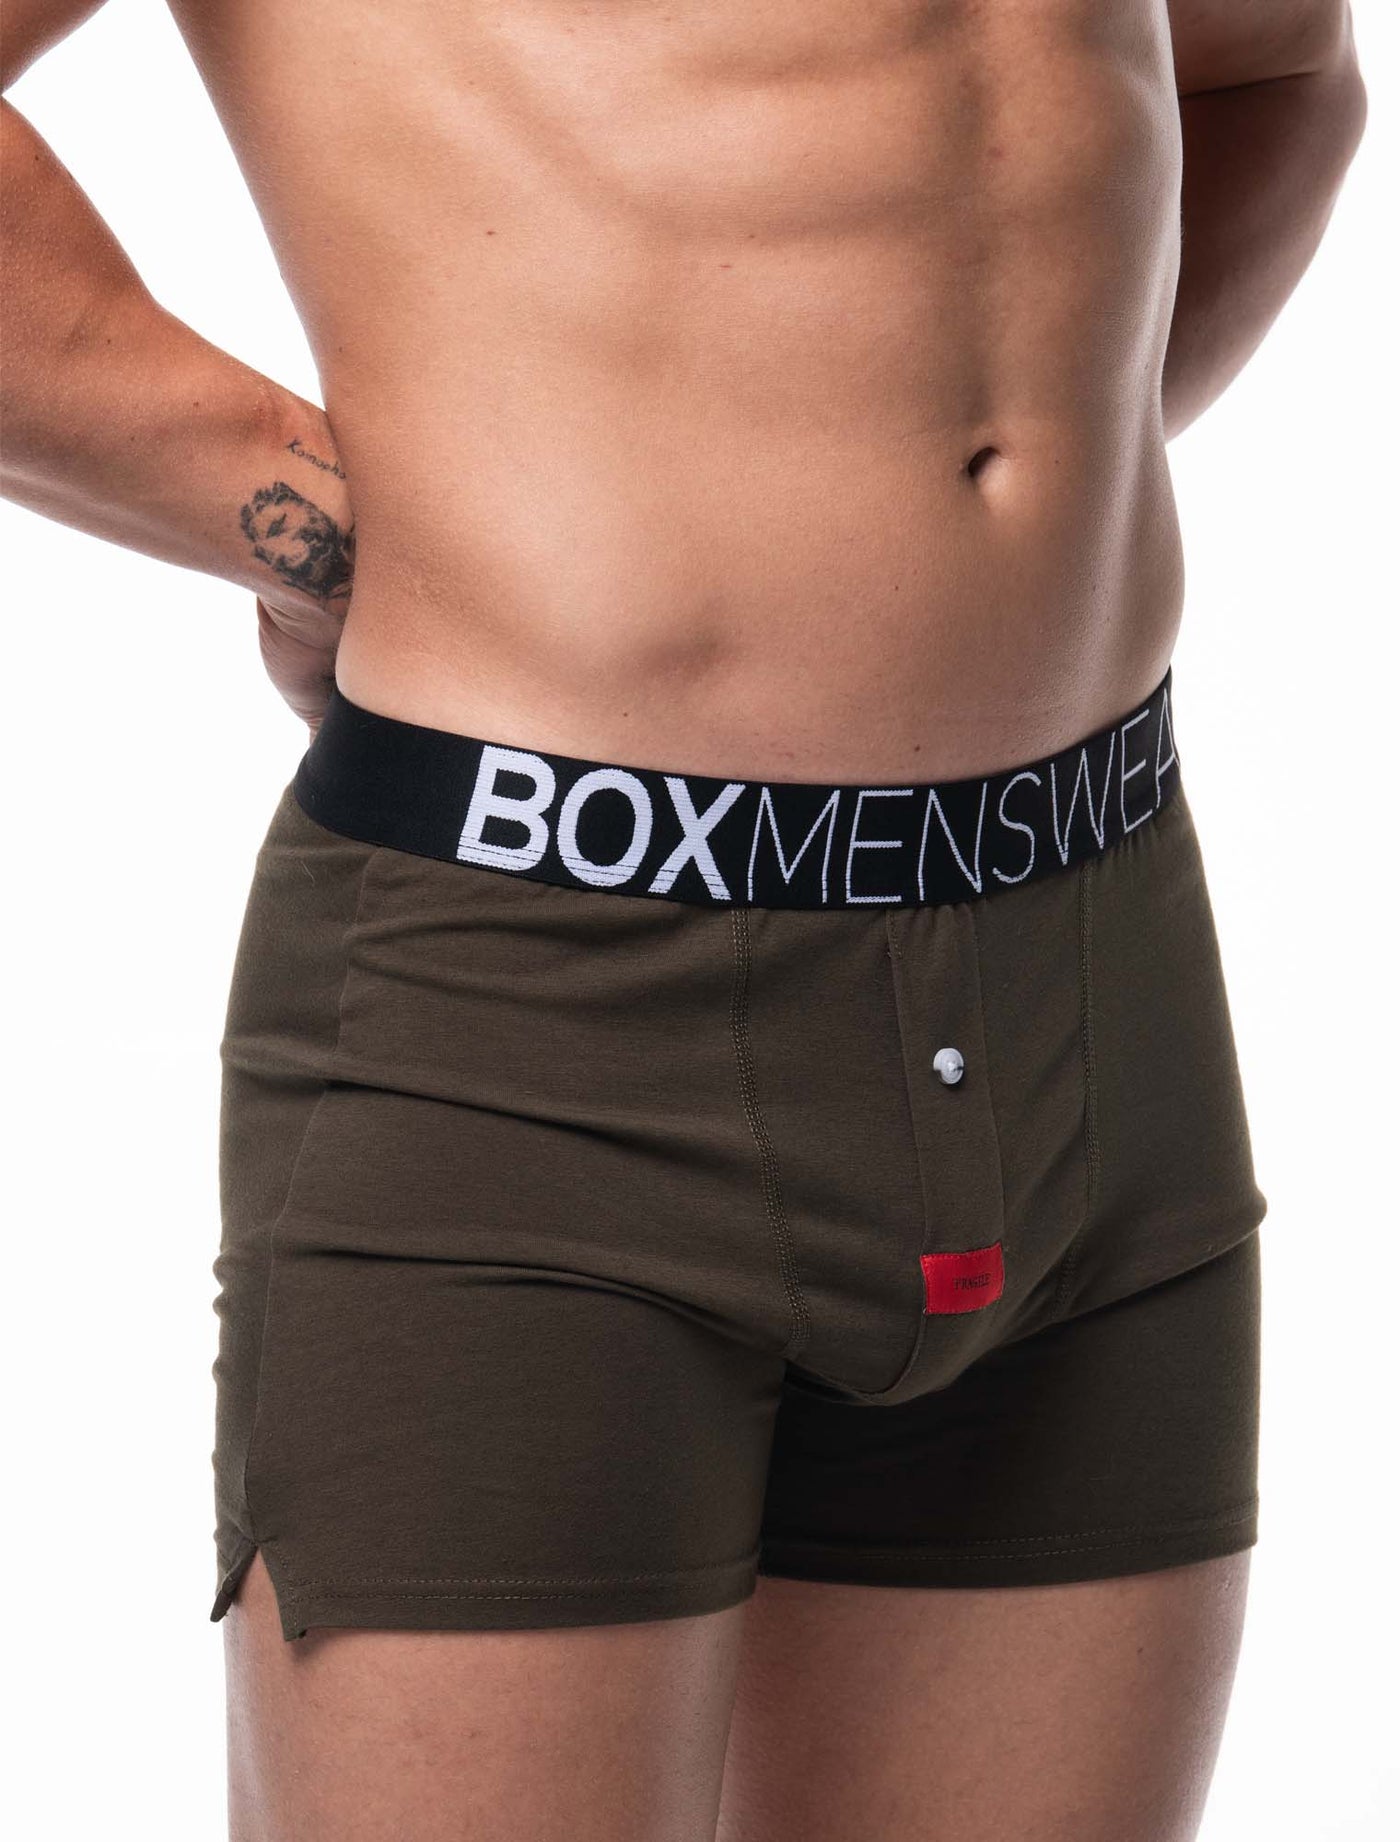 Button-up Boxers - Commando - boxmenswear - {{variant_title}}